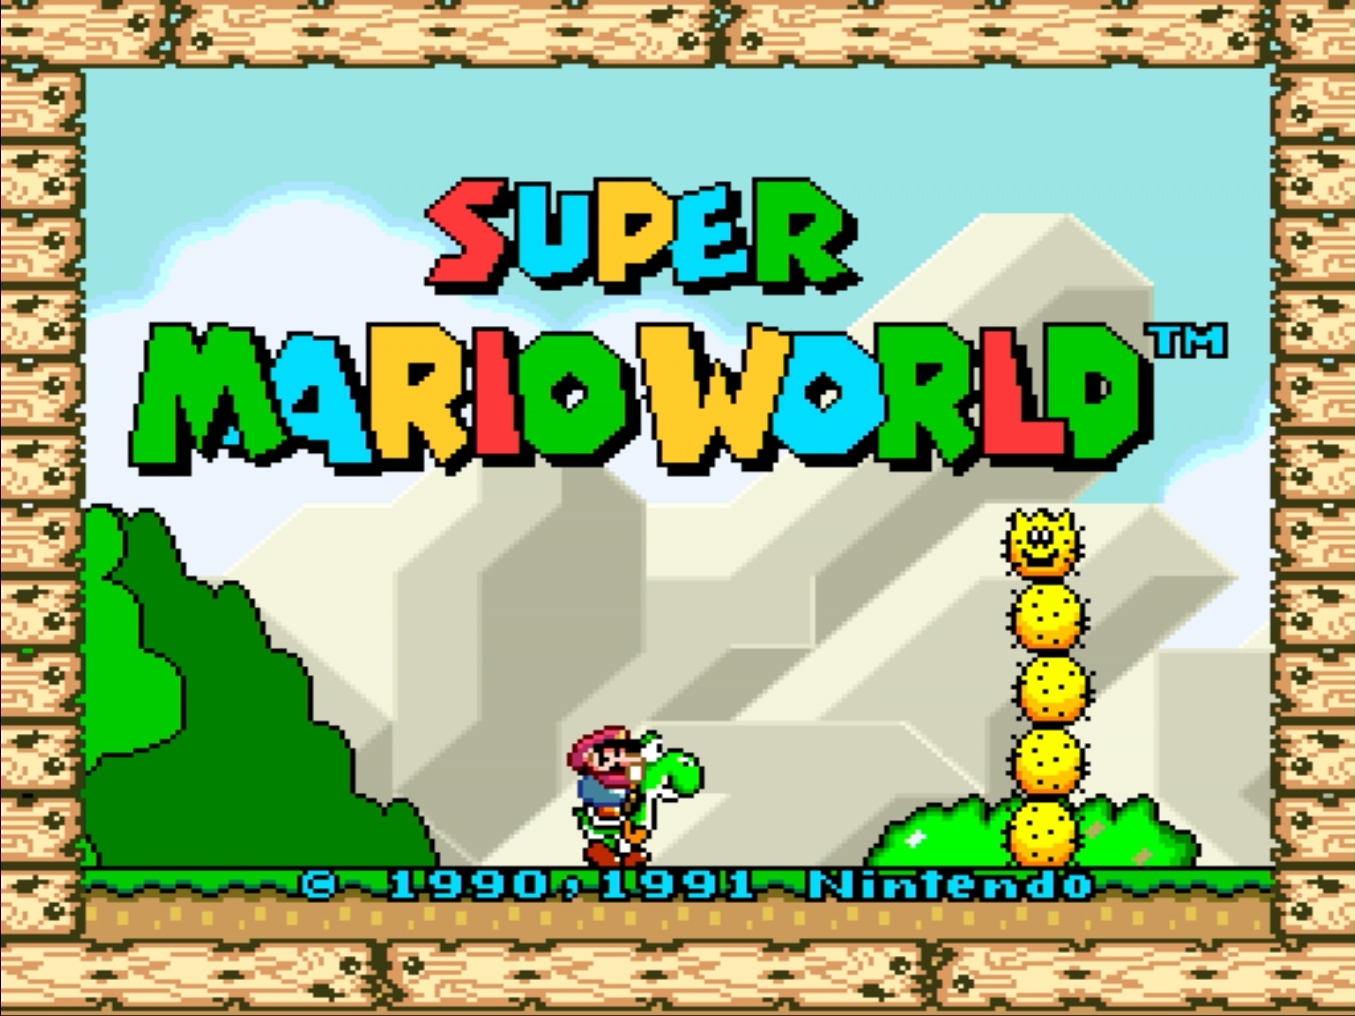 10 Curiosidades Incríveis sobre o Jogo Super Mario World do Super Nintendo  ‣ Blog da Flavi